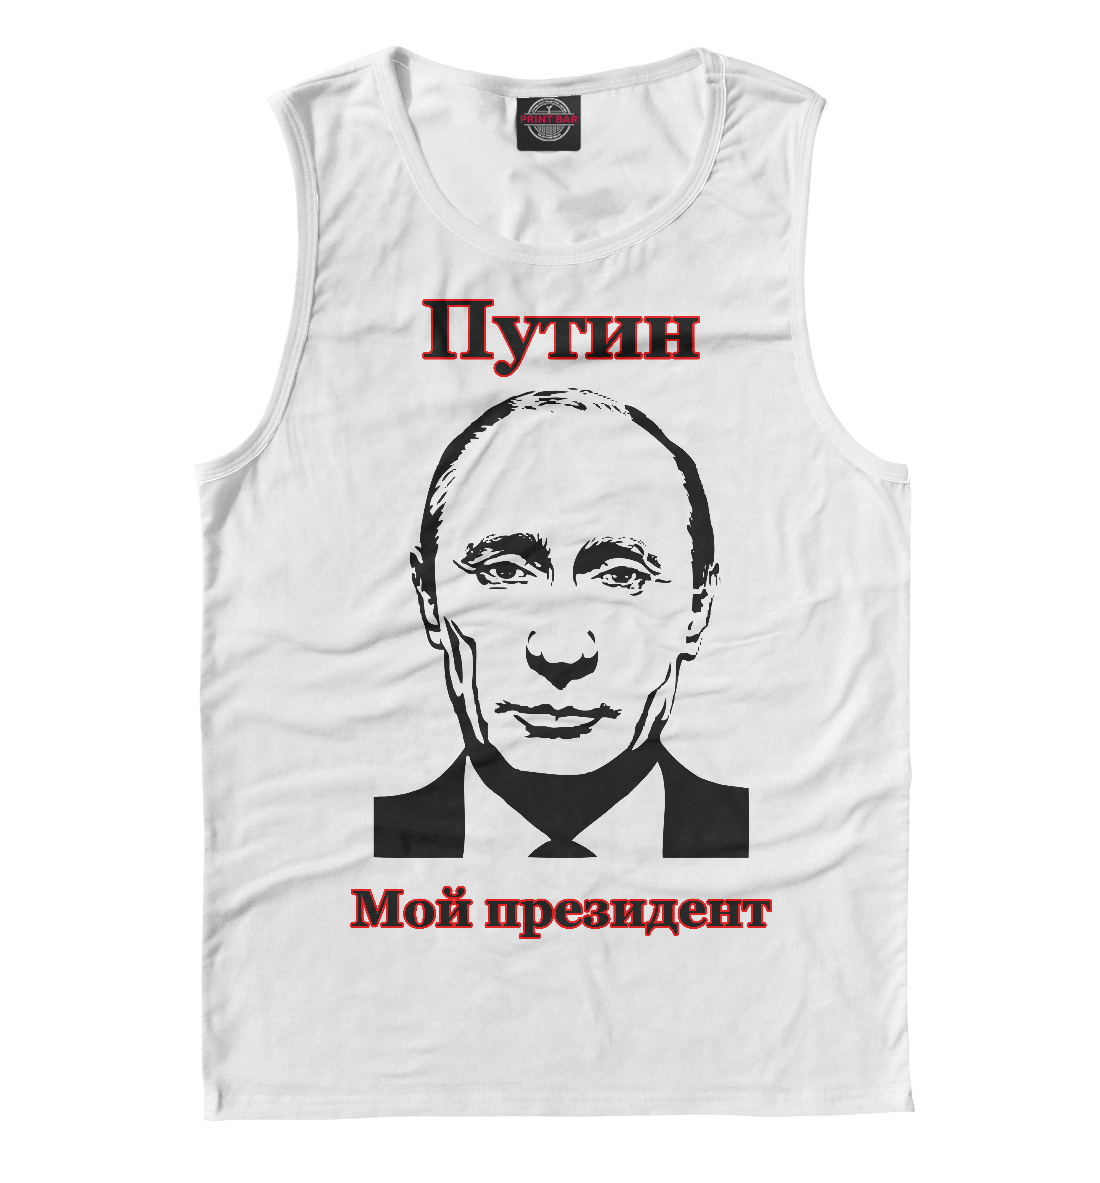 Путин - мой президент